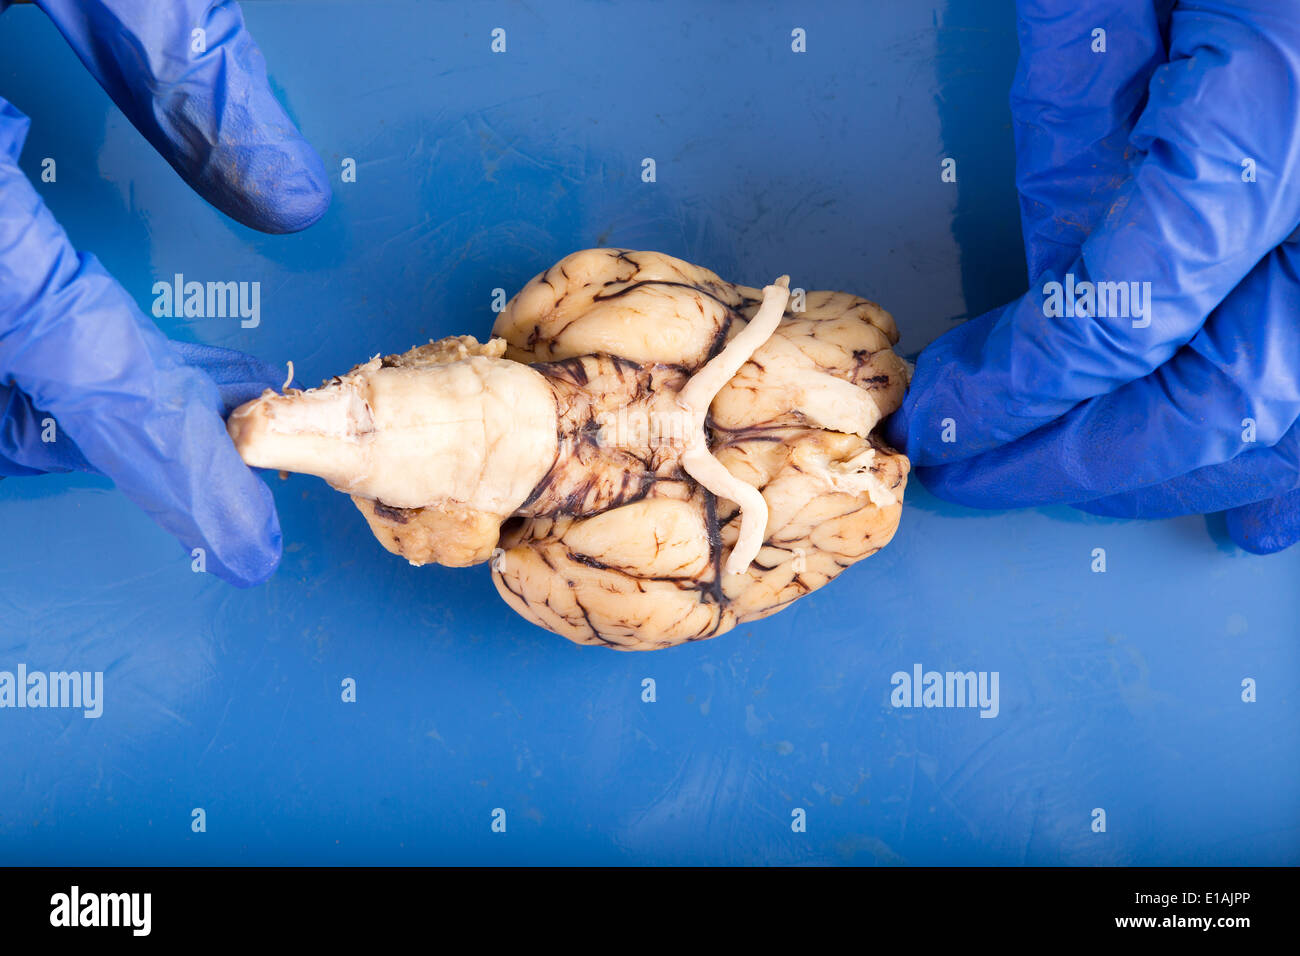 Physiologie-Student sezieren ein Kuh-Gehirn-Diplaying der Unterseite des Organs mit dem Hirnstamm, optischen Nerven und olfaktorischen Stockfoto